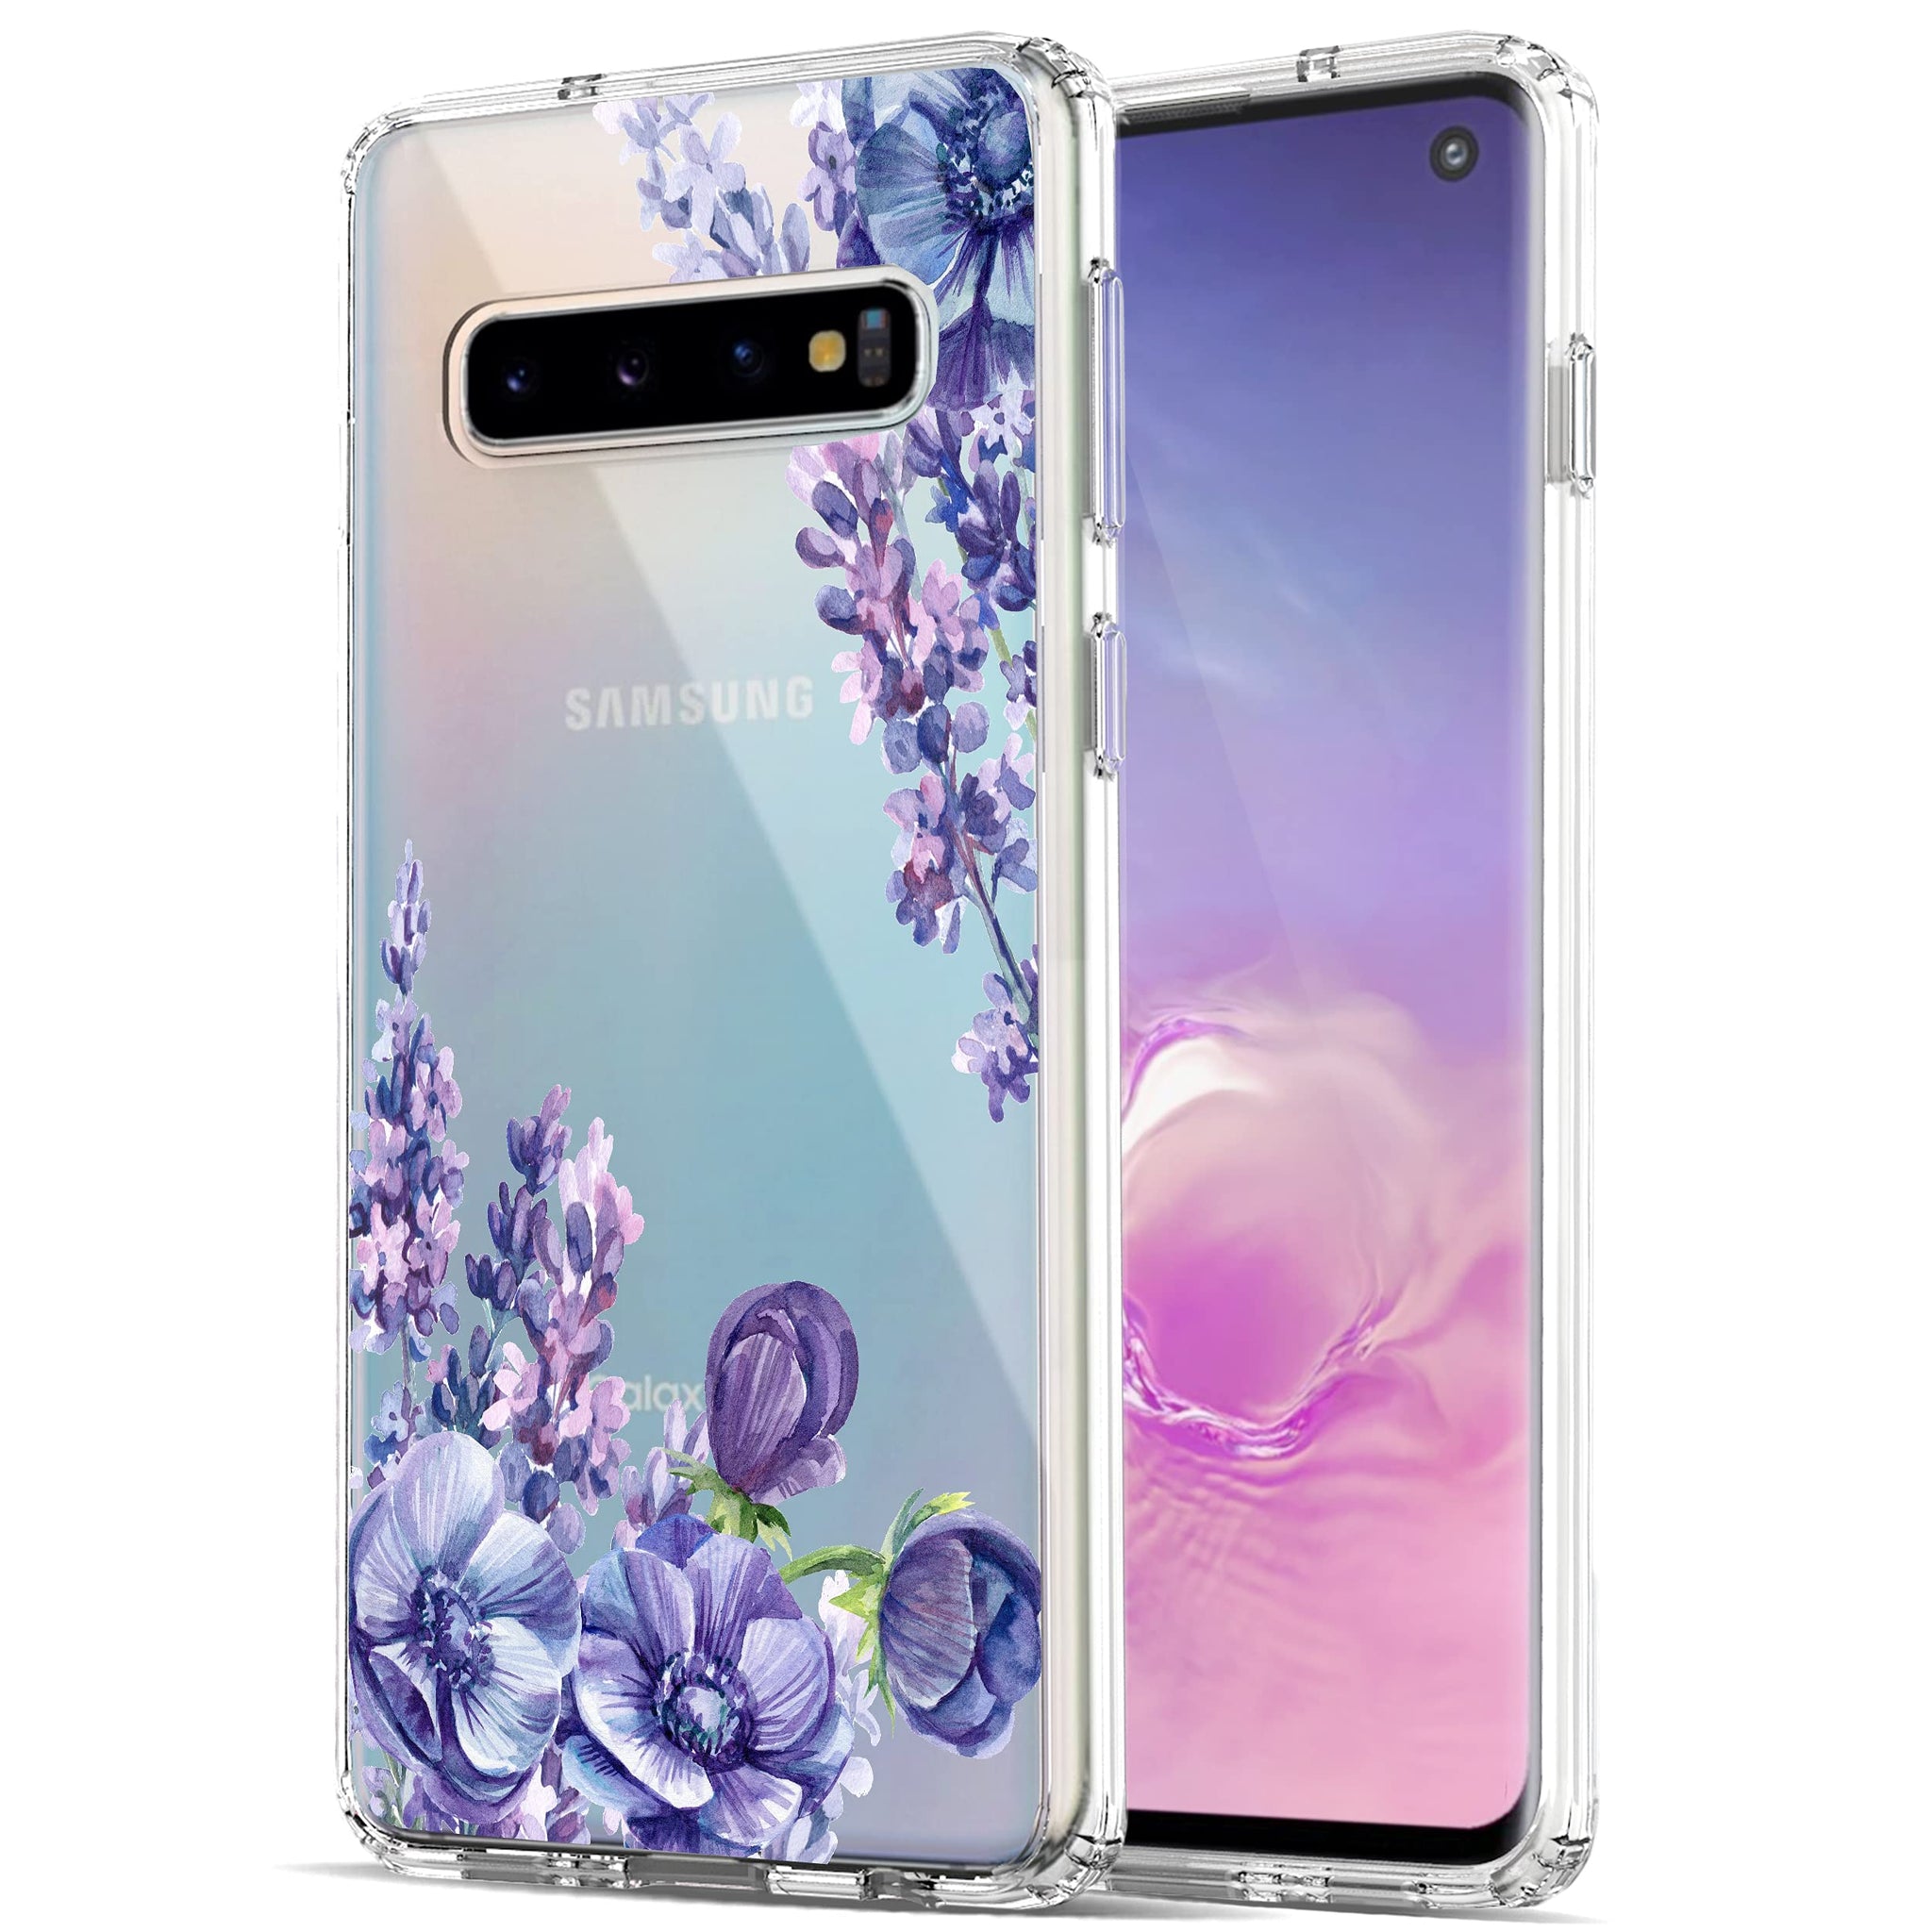 Samsung Galaxy S10 Case, Anti-Scratch Clear Case - Lavender